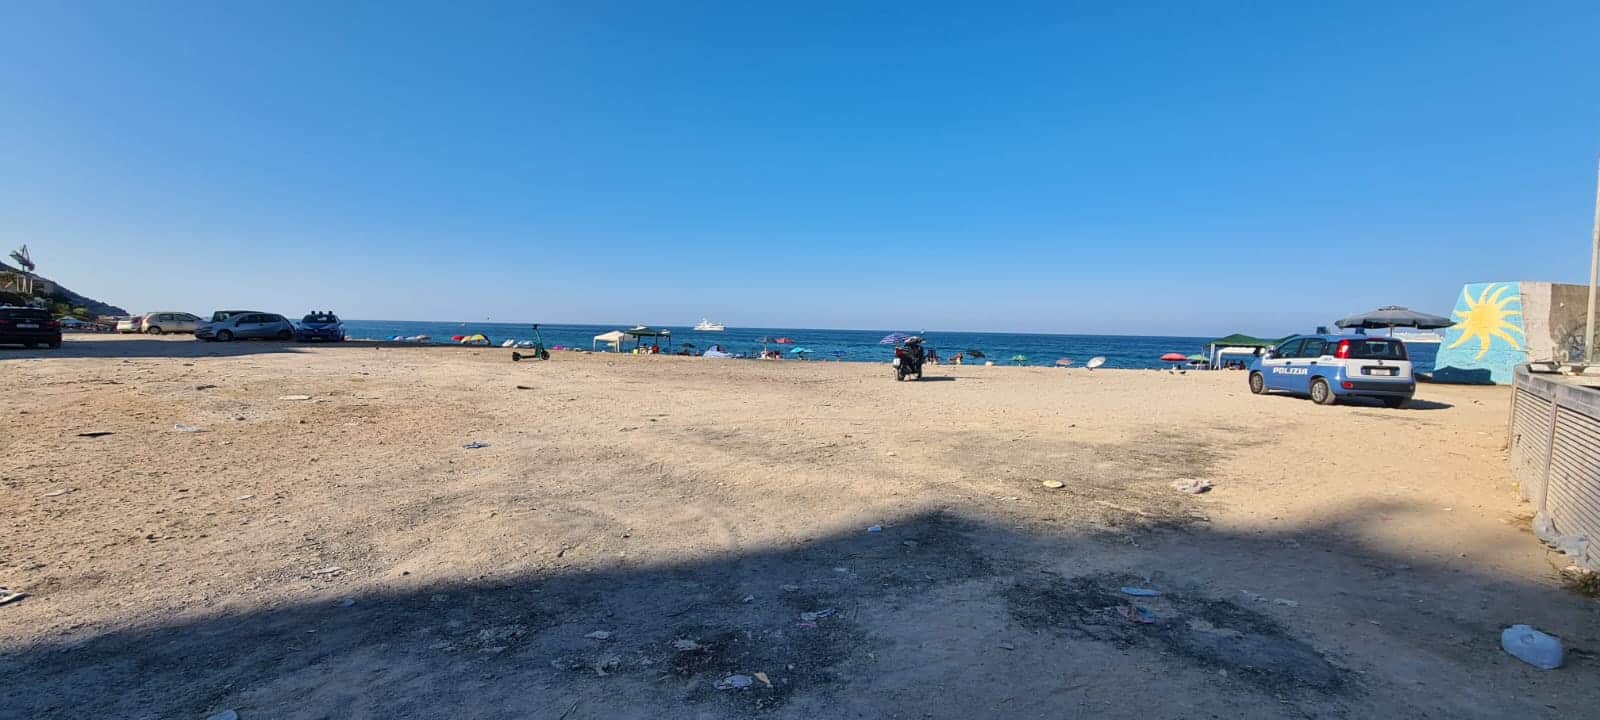 Spiaggia dell’Arenella trasformata in una tendopoli: sgomberate le postazioni abusive